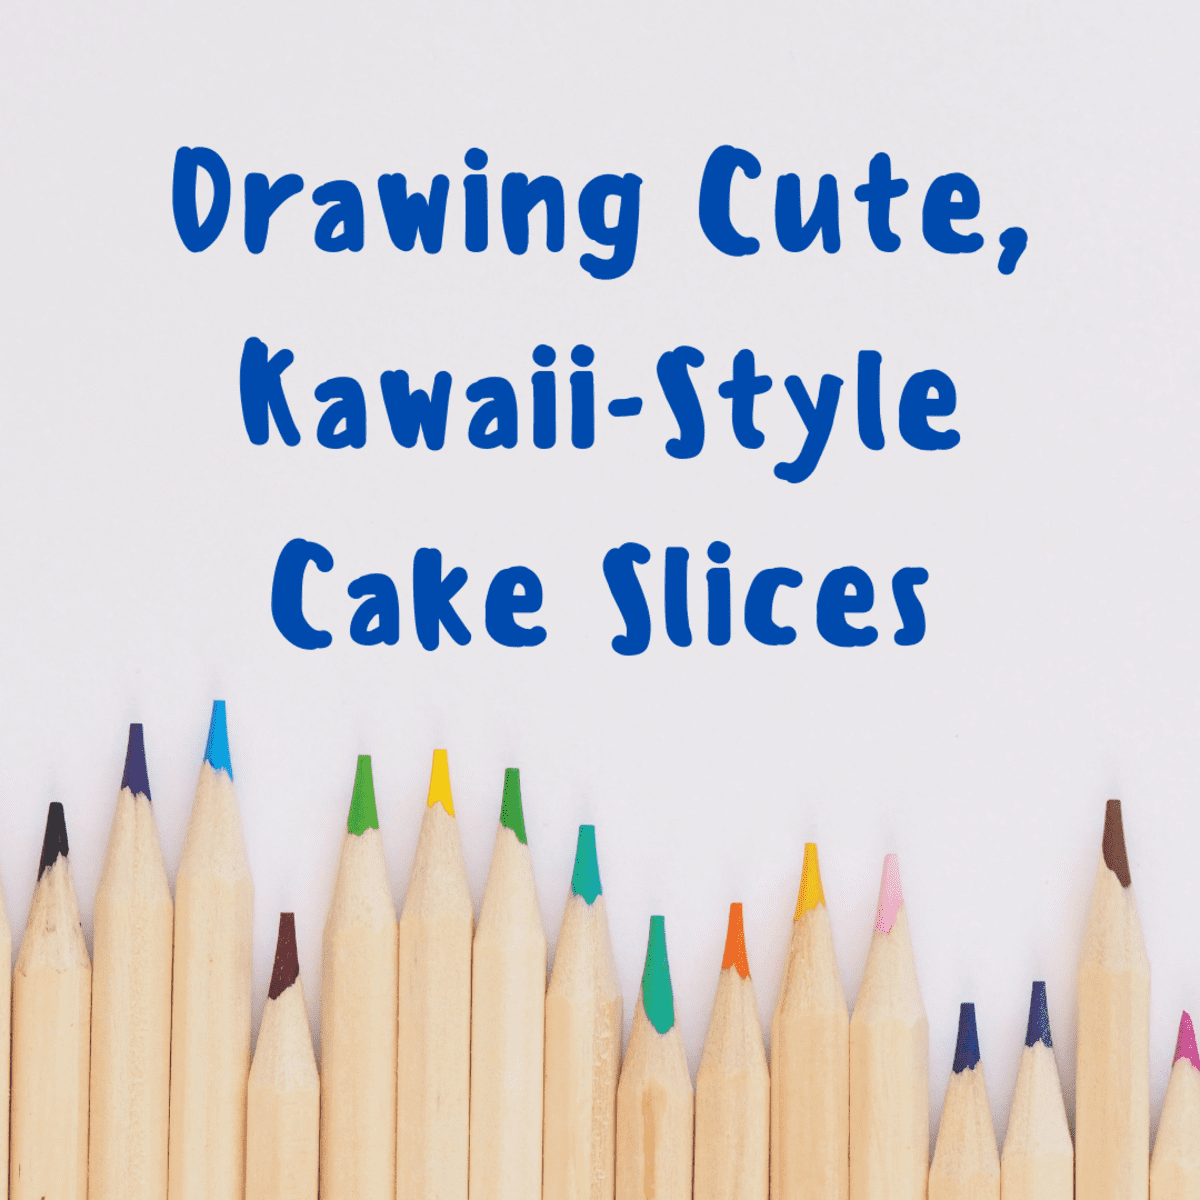 What makes a drawing Kawaii?